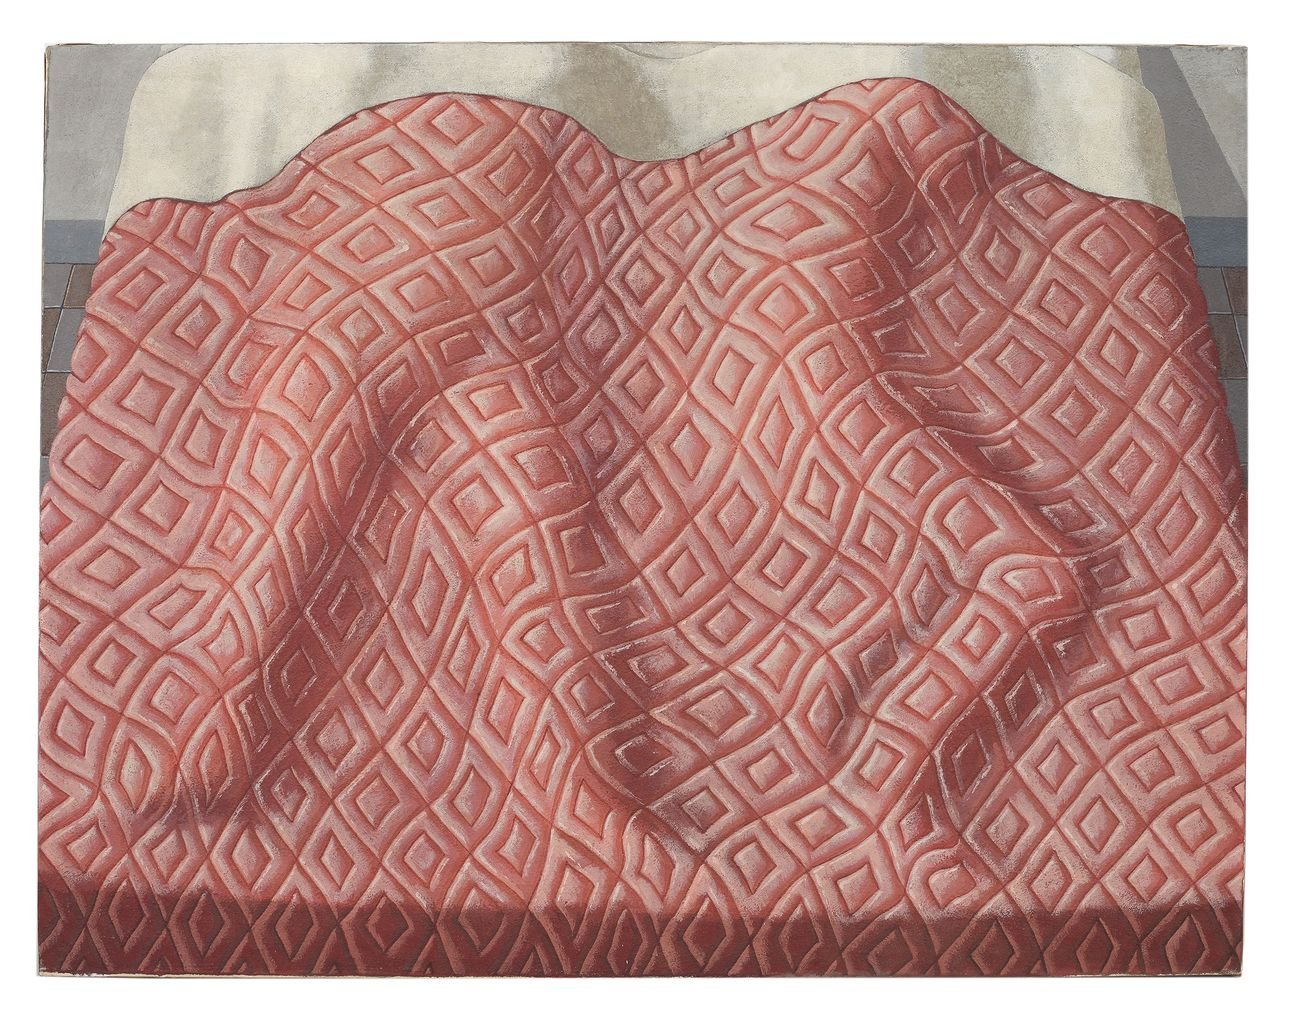 Domenico Gnoli, Due dormienti, 1966. Acrilico e sabbia su tela. Collezione Privata © Domenico Gnoli, by SIAE 2021